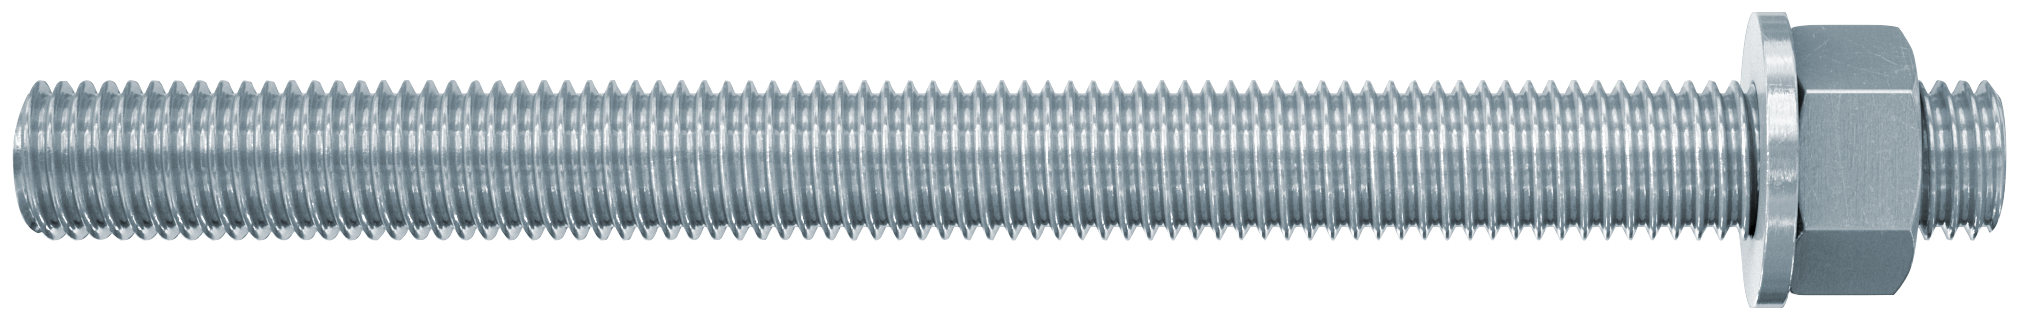 fischer Barre filettate in acciaio FIS A M12X160 8.8 (1 Pz.) Barra filettata in acciaio zincato con classe di resistenza 8.8, con taglio dritto, dado e rosetta fie2212